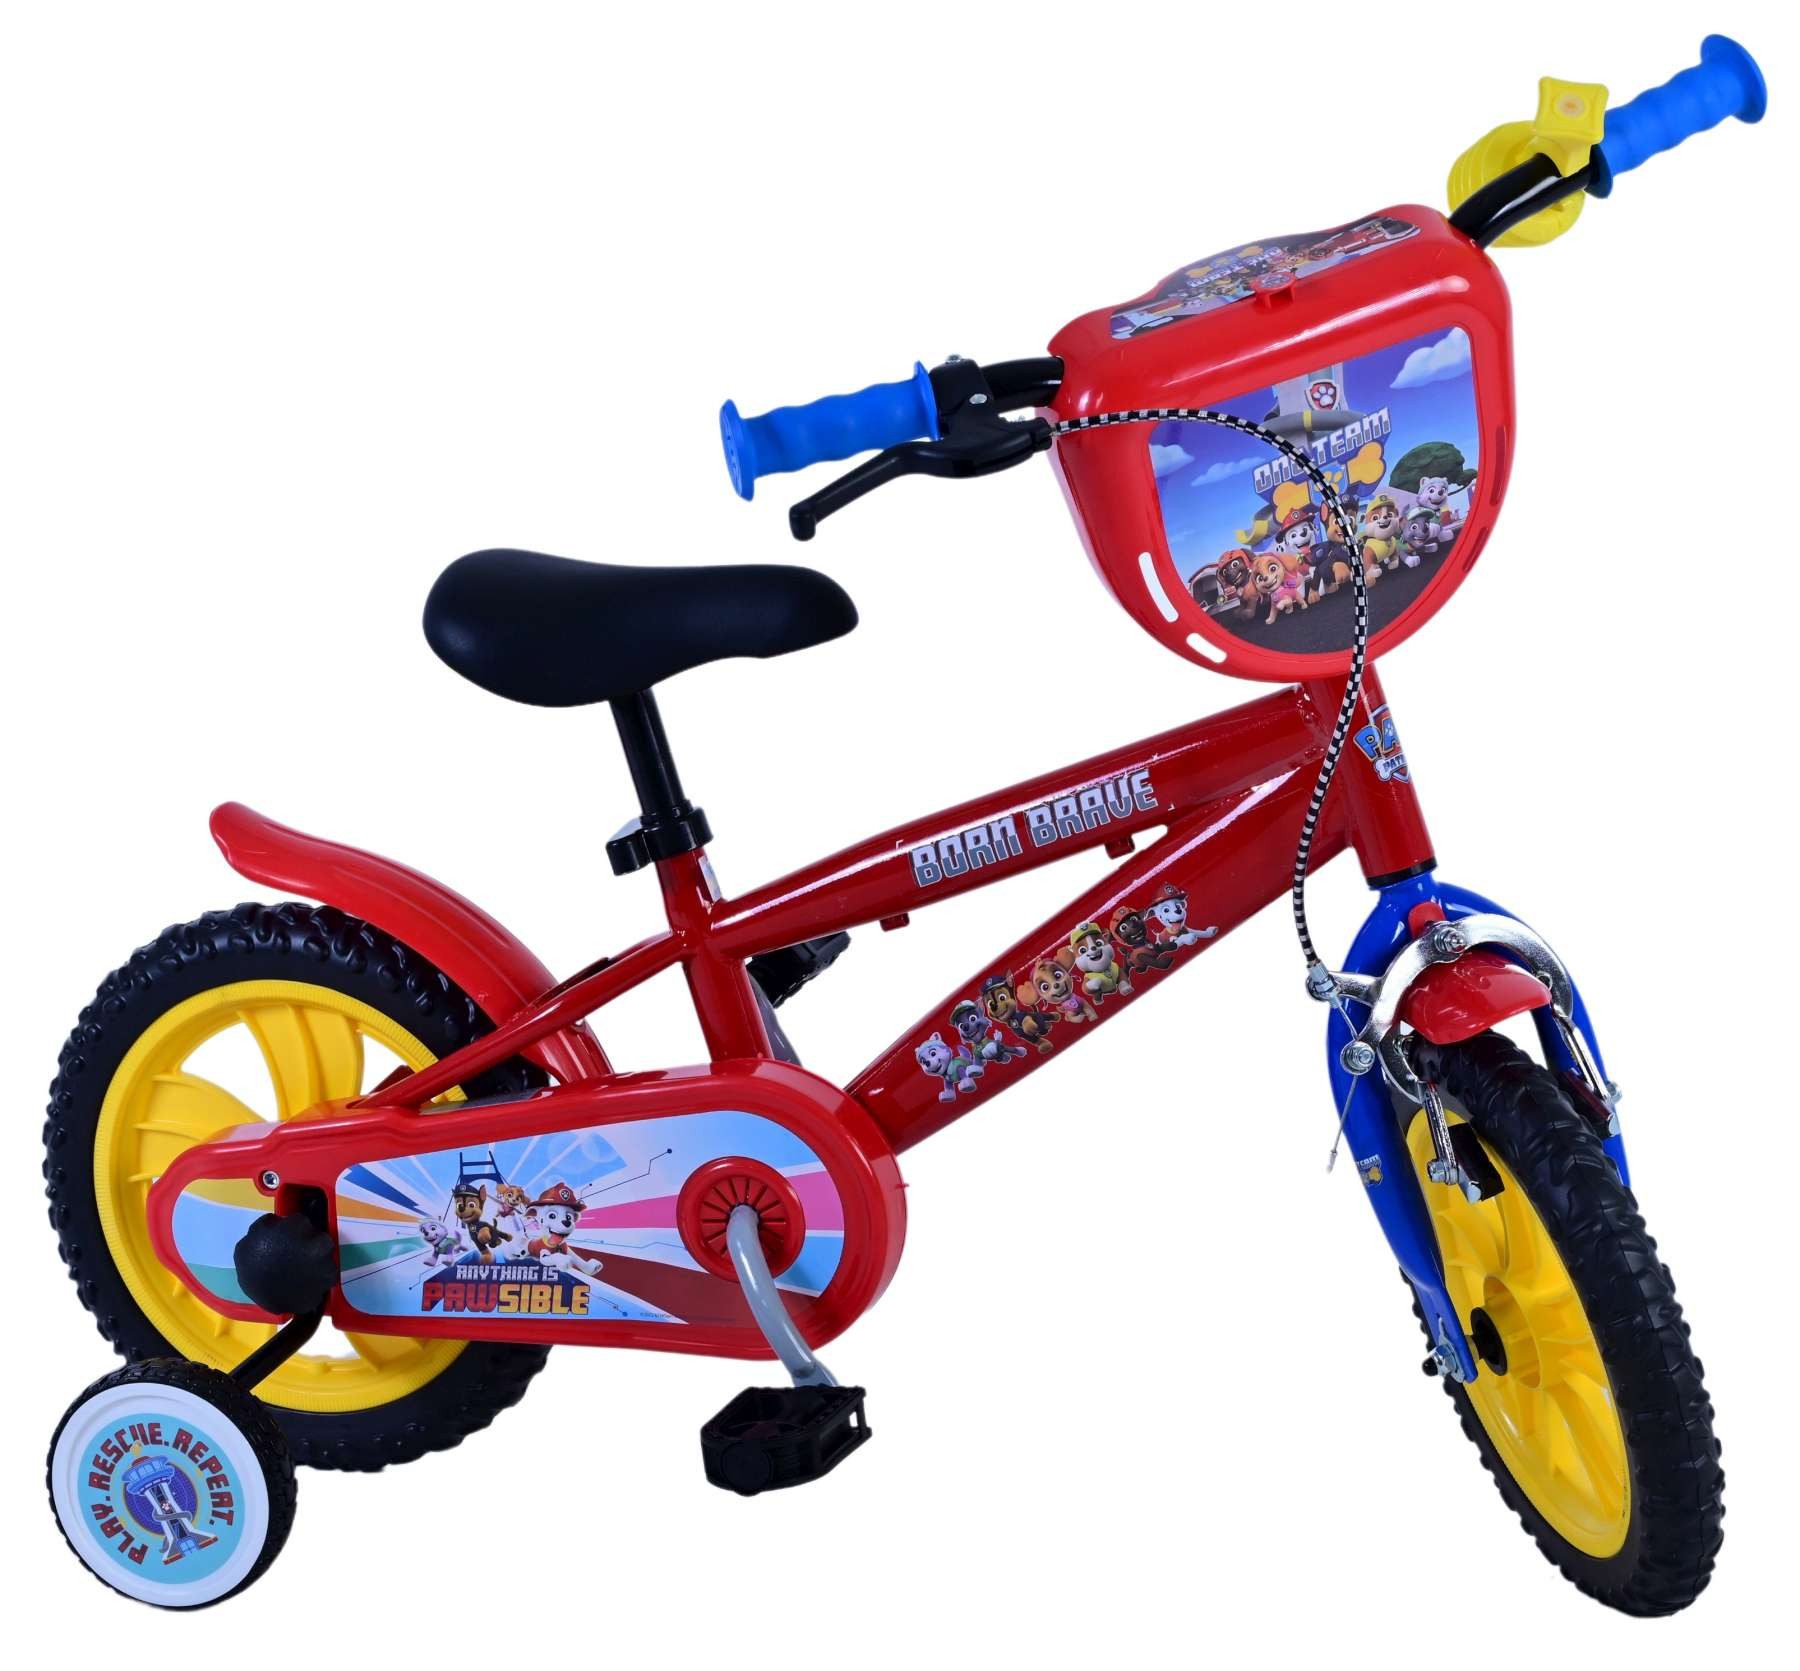 Volare Kinderfahrrad Kinderfahrrad Paw Patrol für Jungen 12 Zoll Kinderrad in Rot Fahrrad